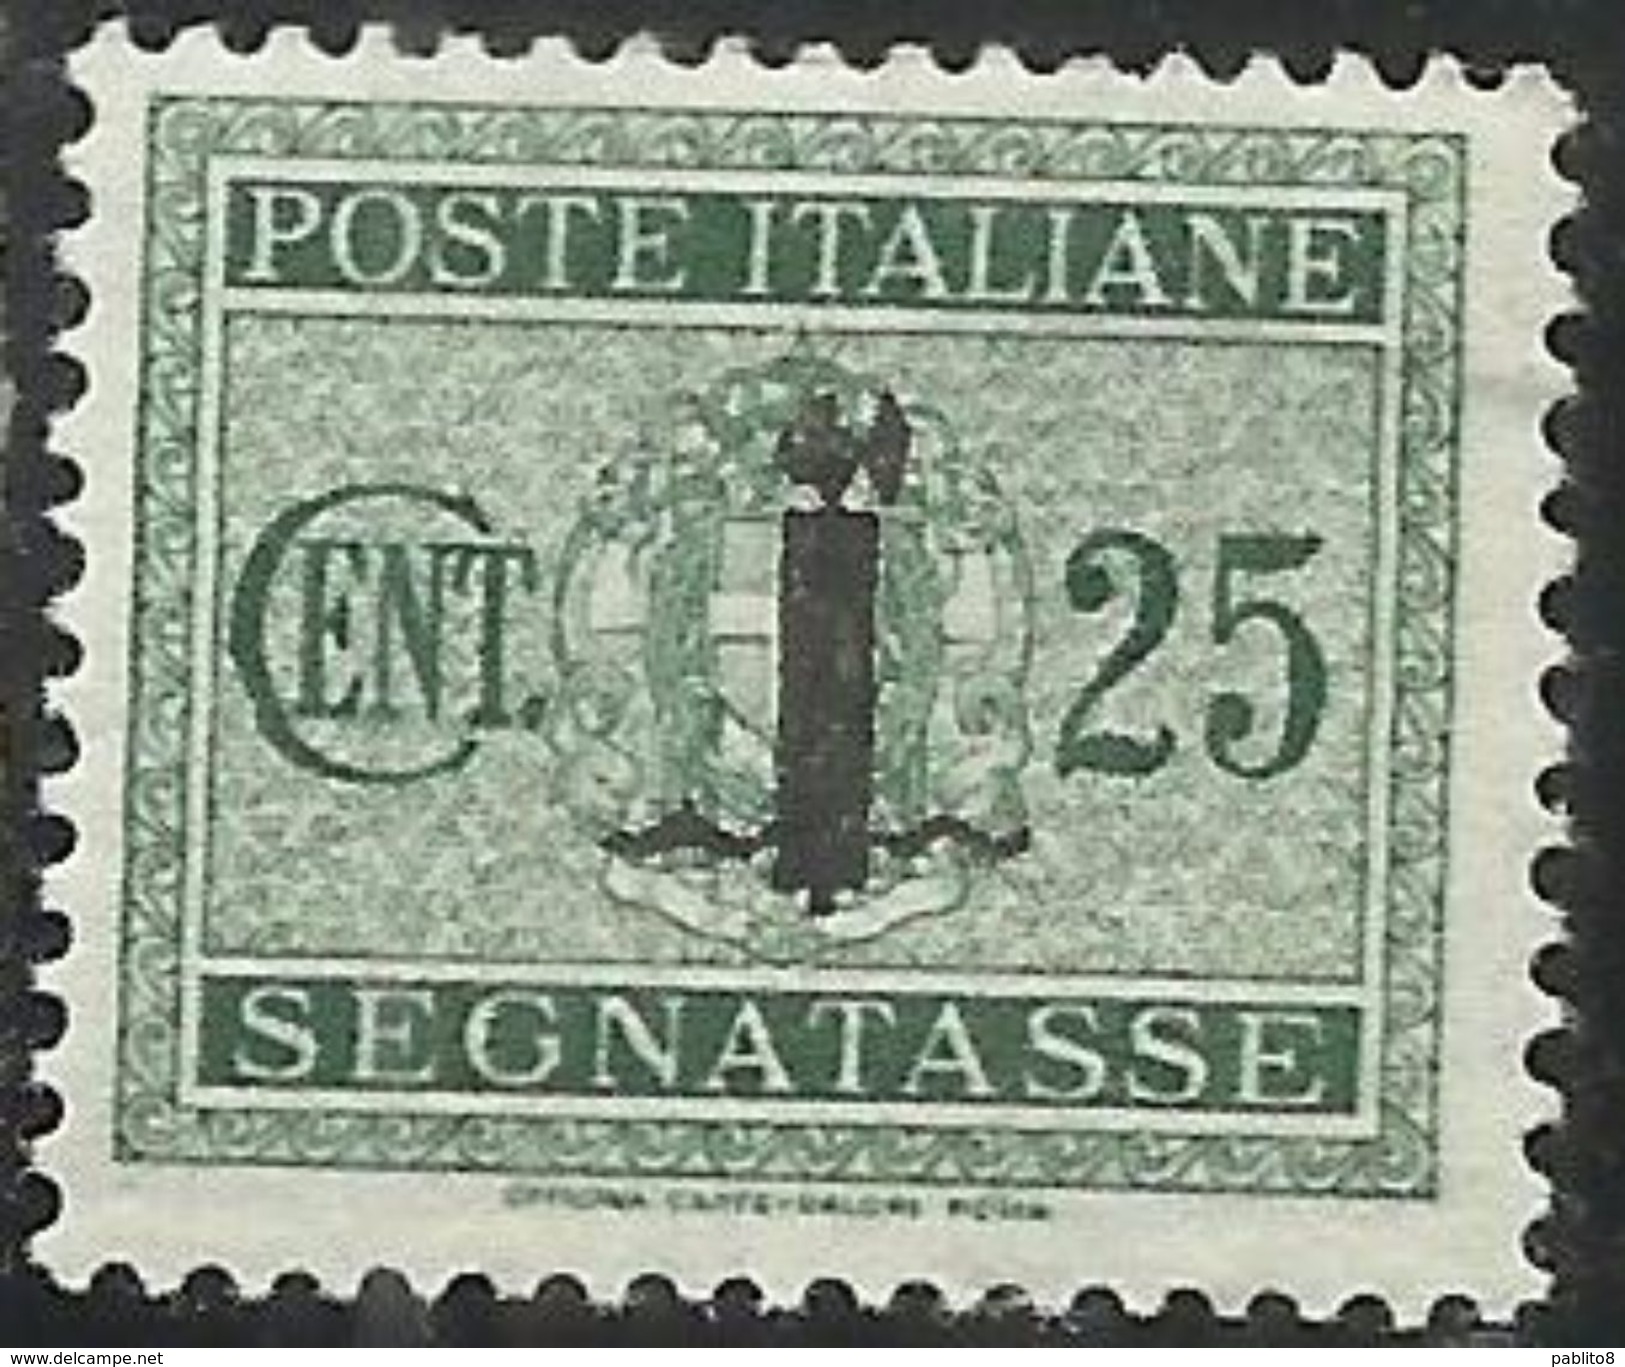 ITALIA REGNO REPUBBLICA SOCIALE RSI 1944 SEGNATASSE POSTAGE DUE PICCOLO FASCIO FASCIETTO CENT. 25 TASSE  MLH - Portomarken